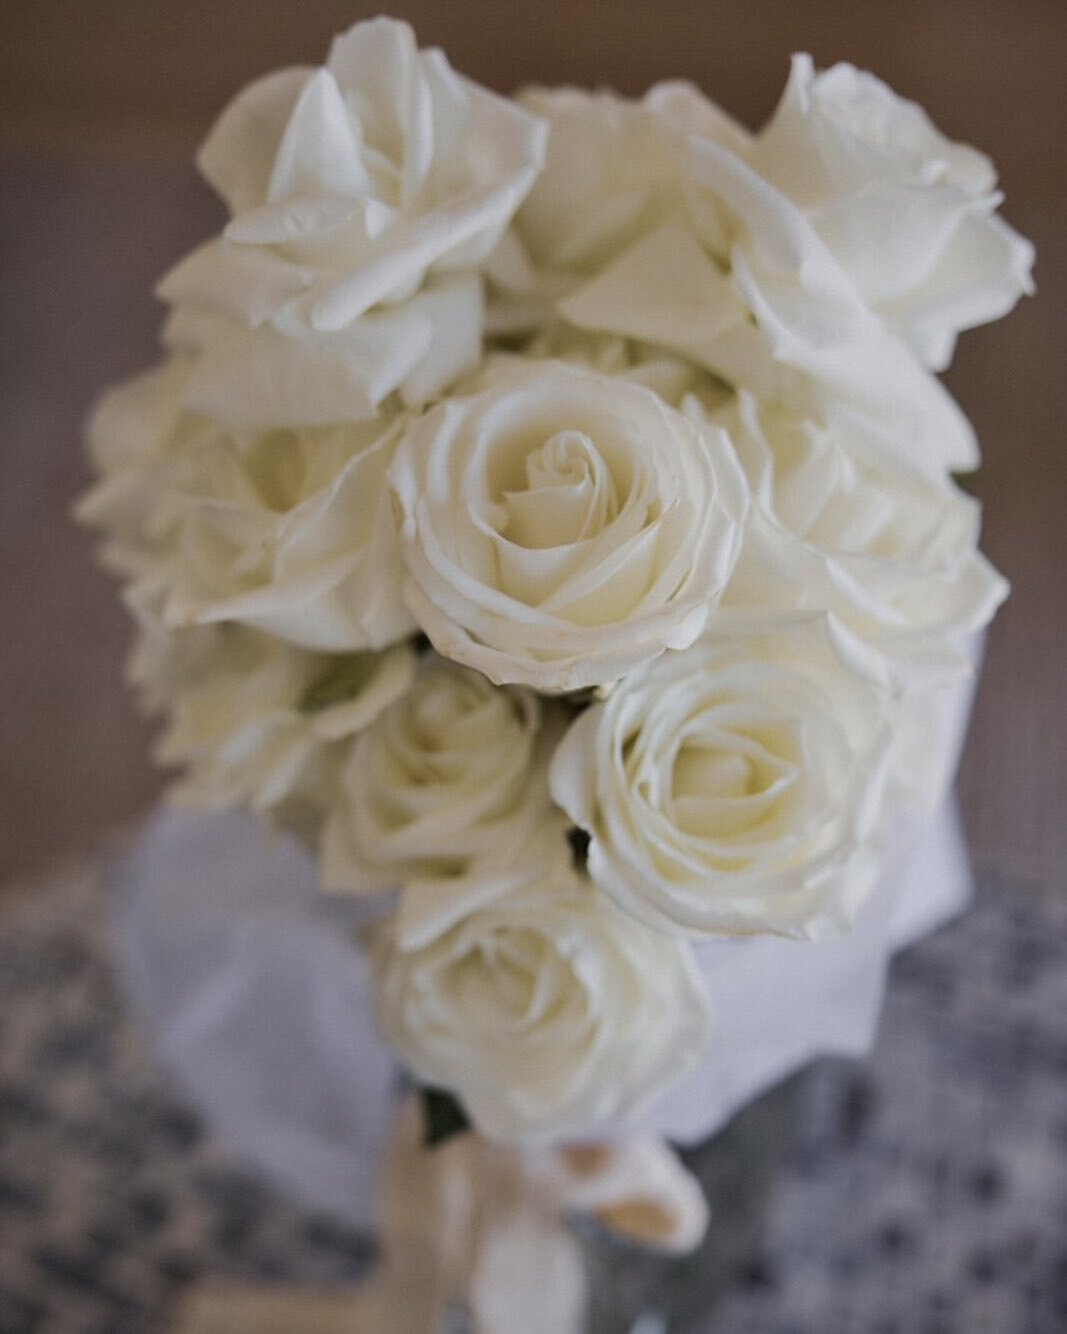 Claire&rsquo;s bridal bouquet 🕊️

@tomekphotography